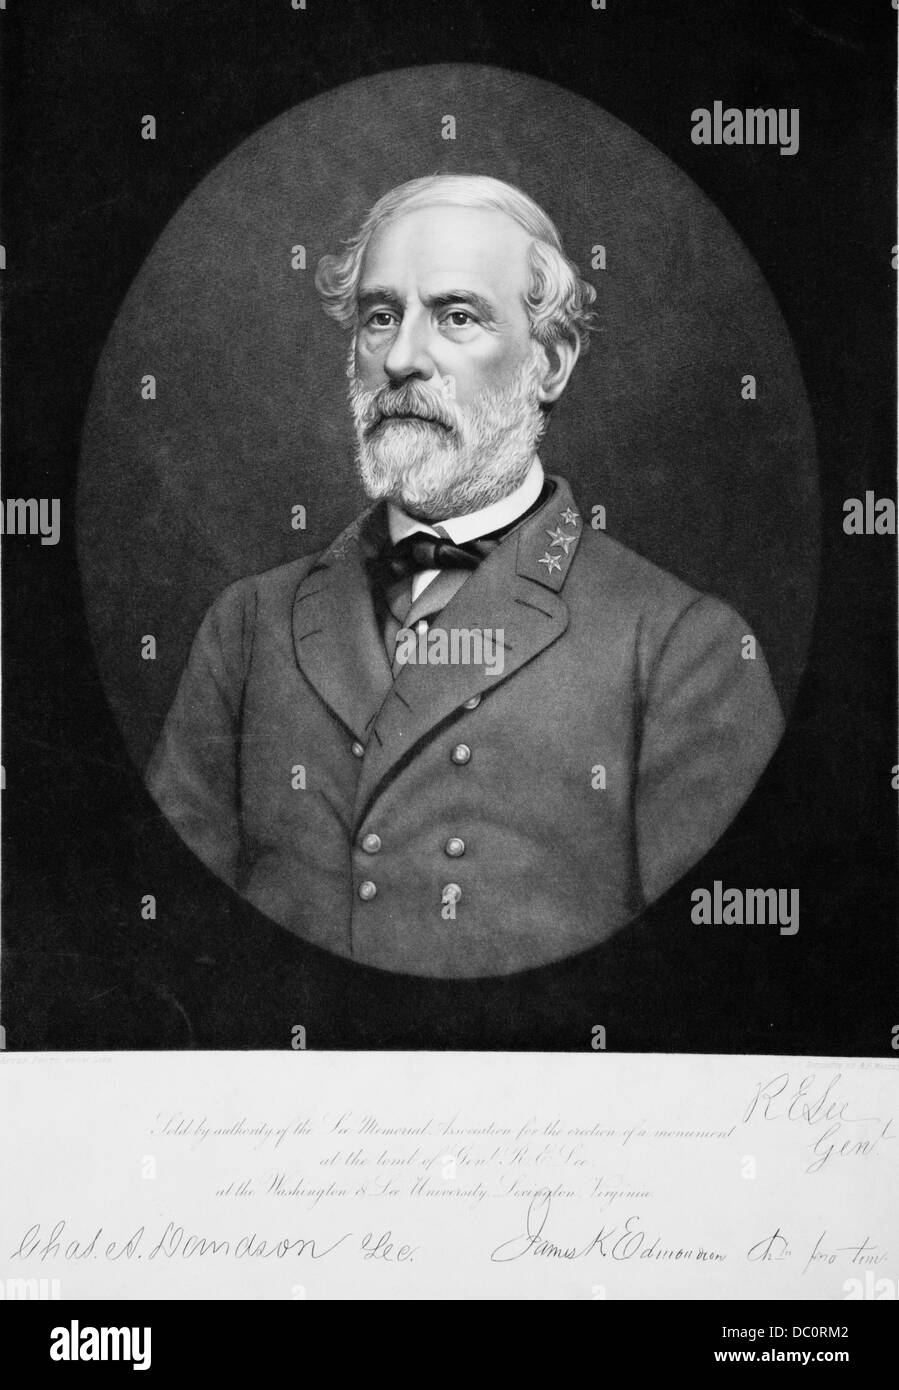 1800s 1860s PORTRAIT DE ROBERT E LEE GÉNÉRAL DE L'armée confédérée PENDANT LA GUERRE CIVILE AMÉRICAINE Banque D'Images